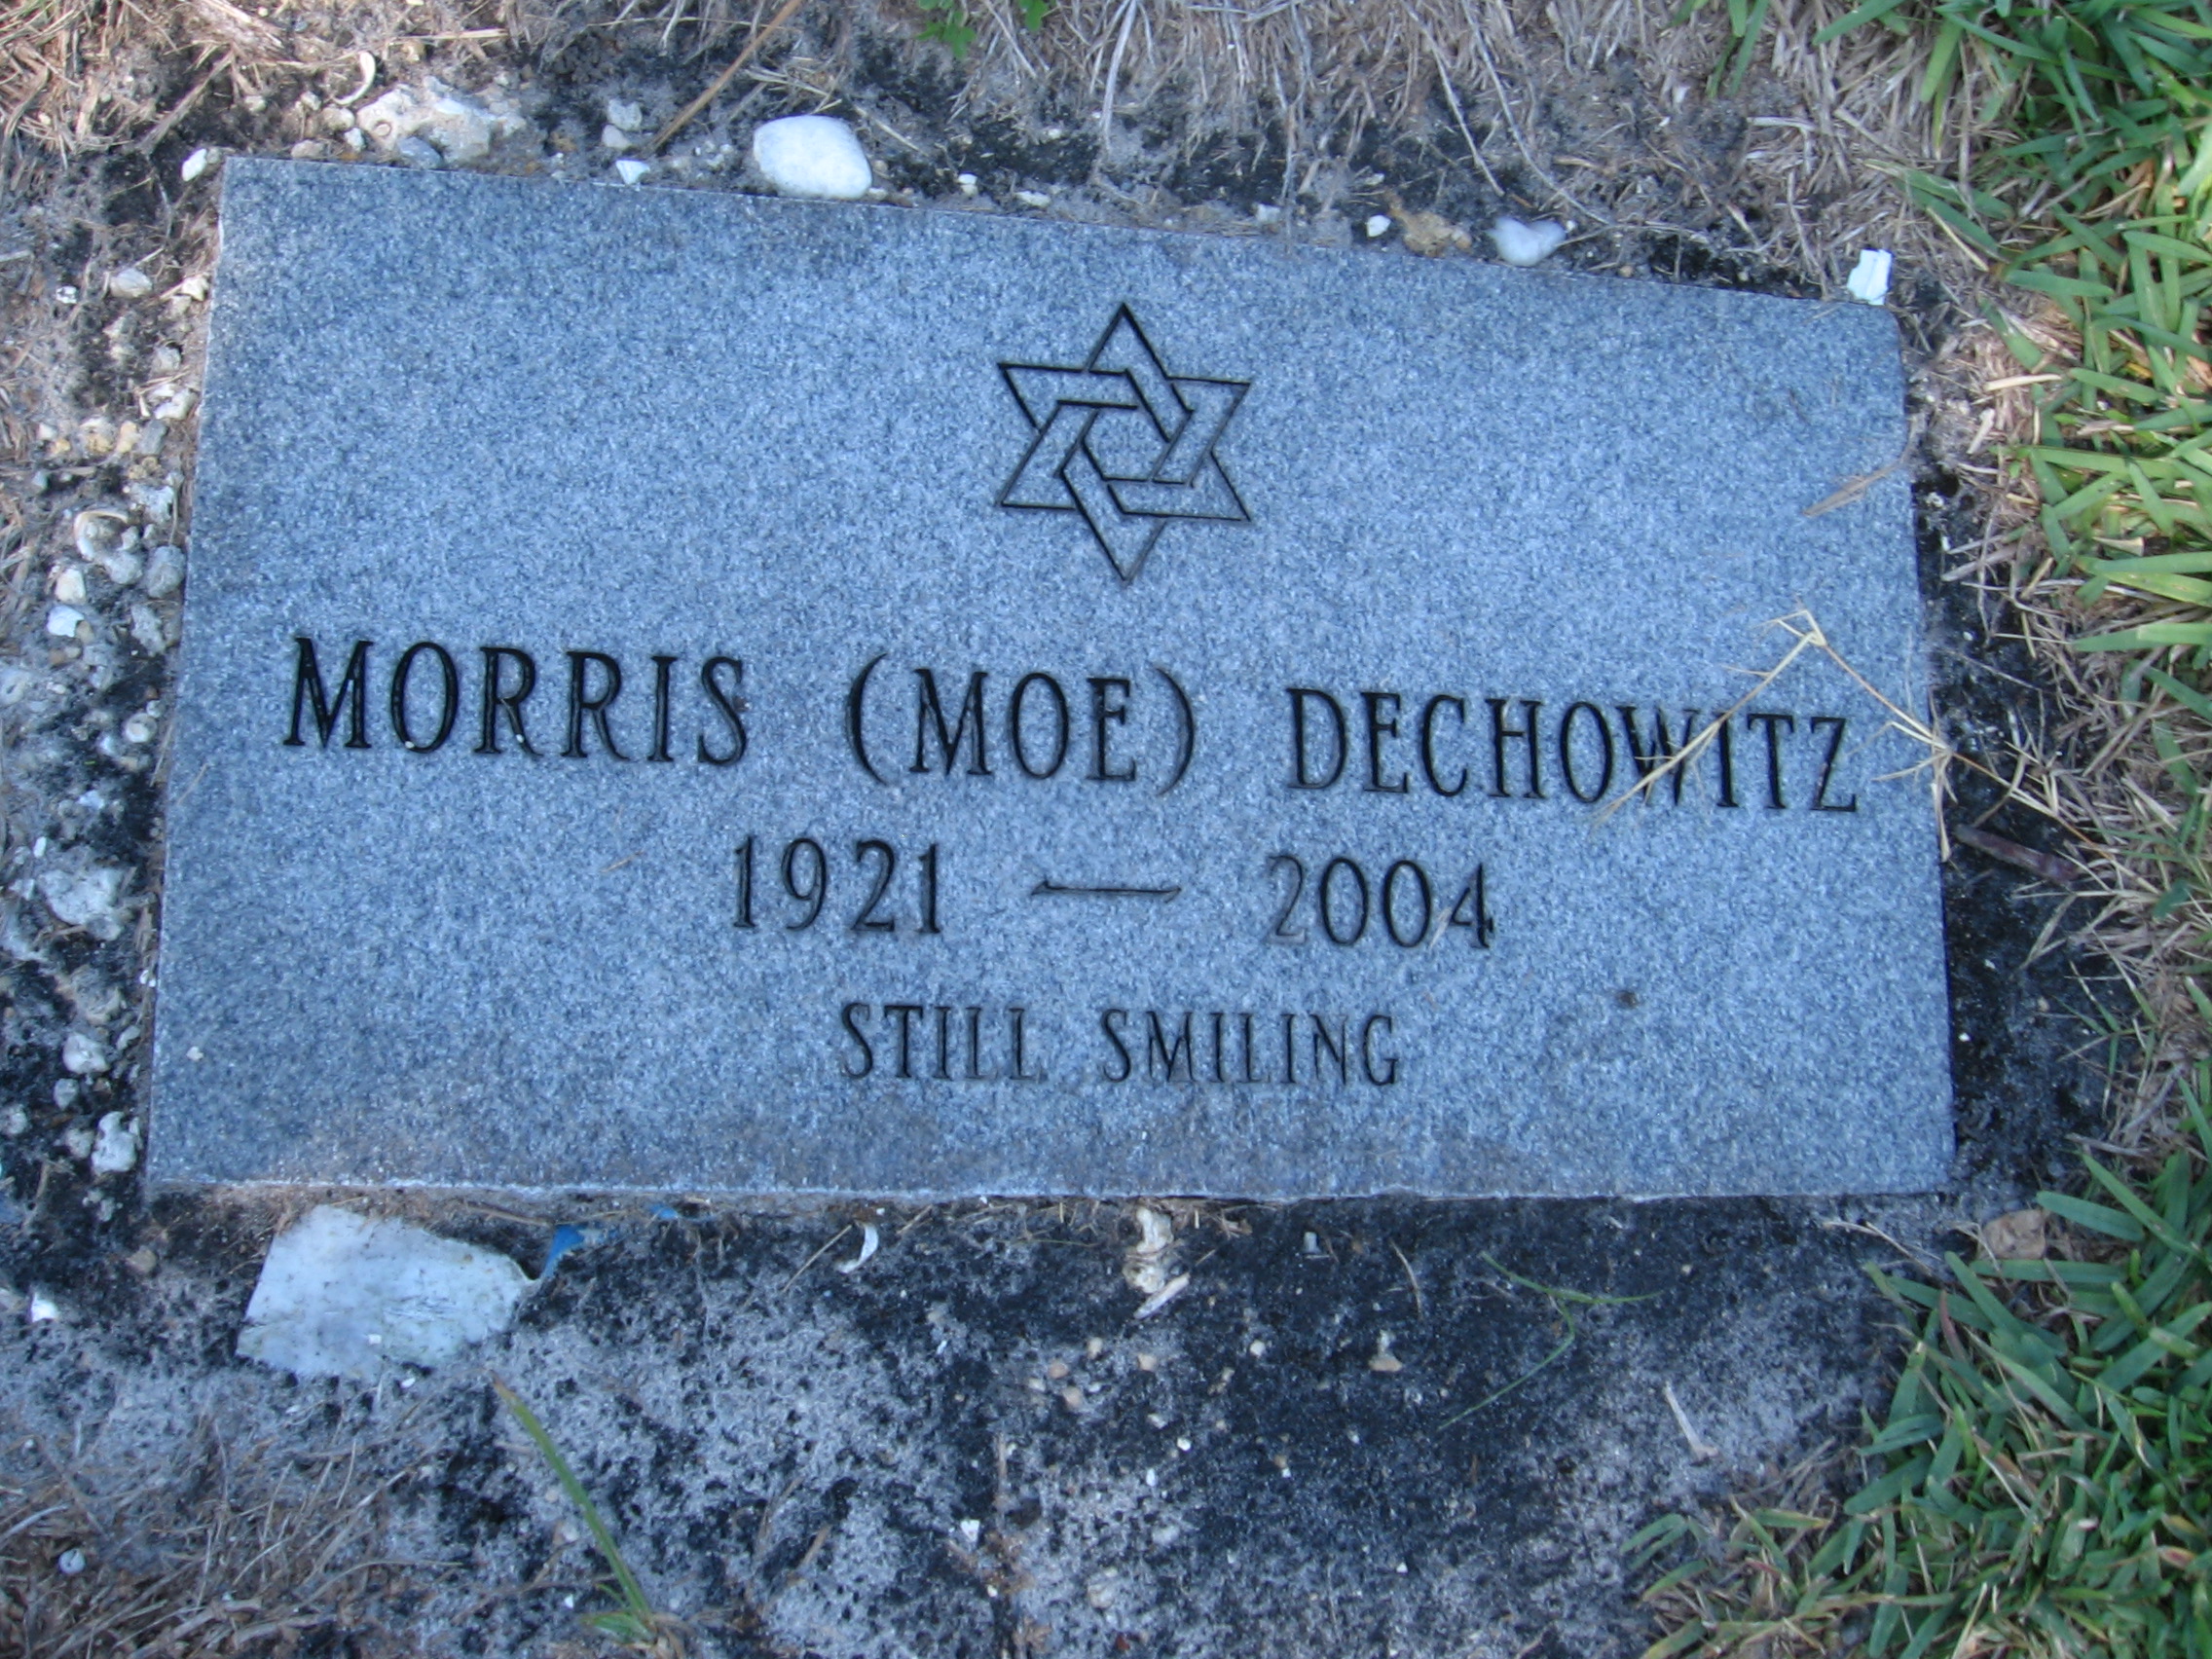 Morris "Moe" Dechowitz